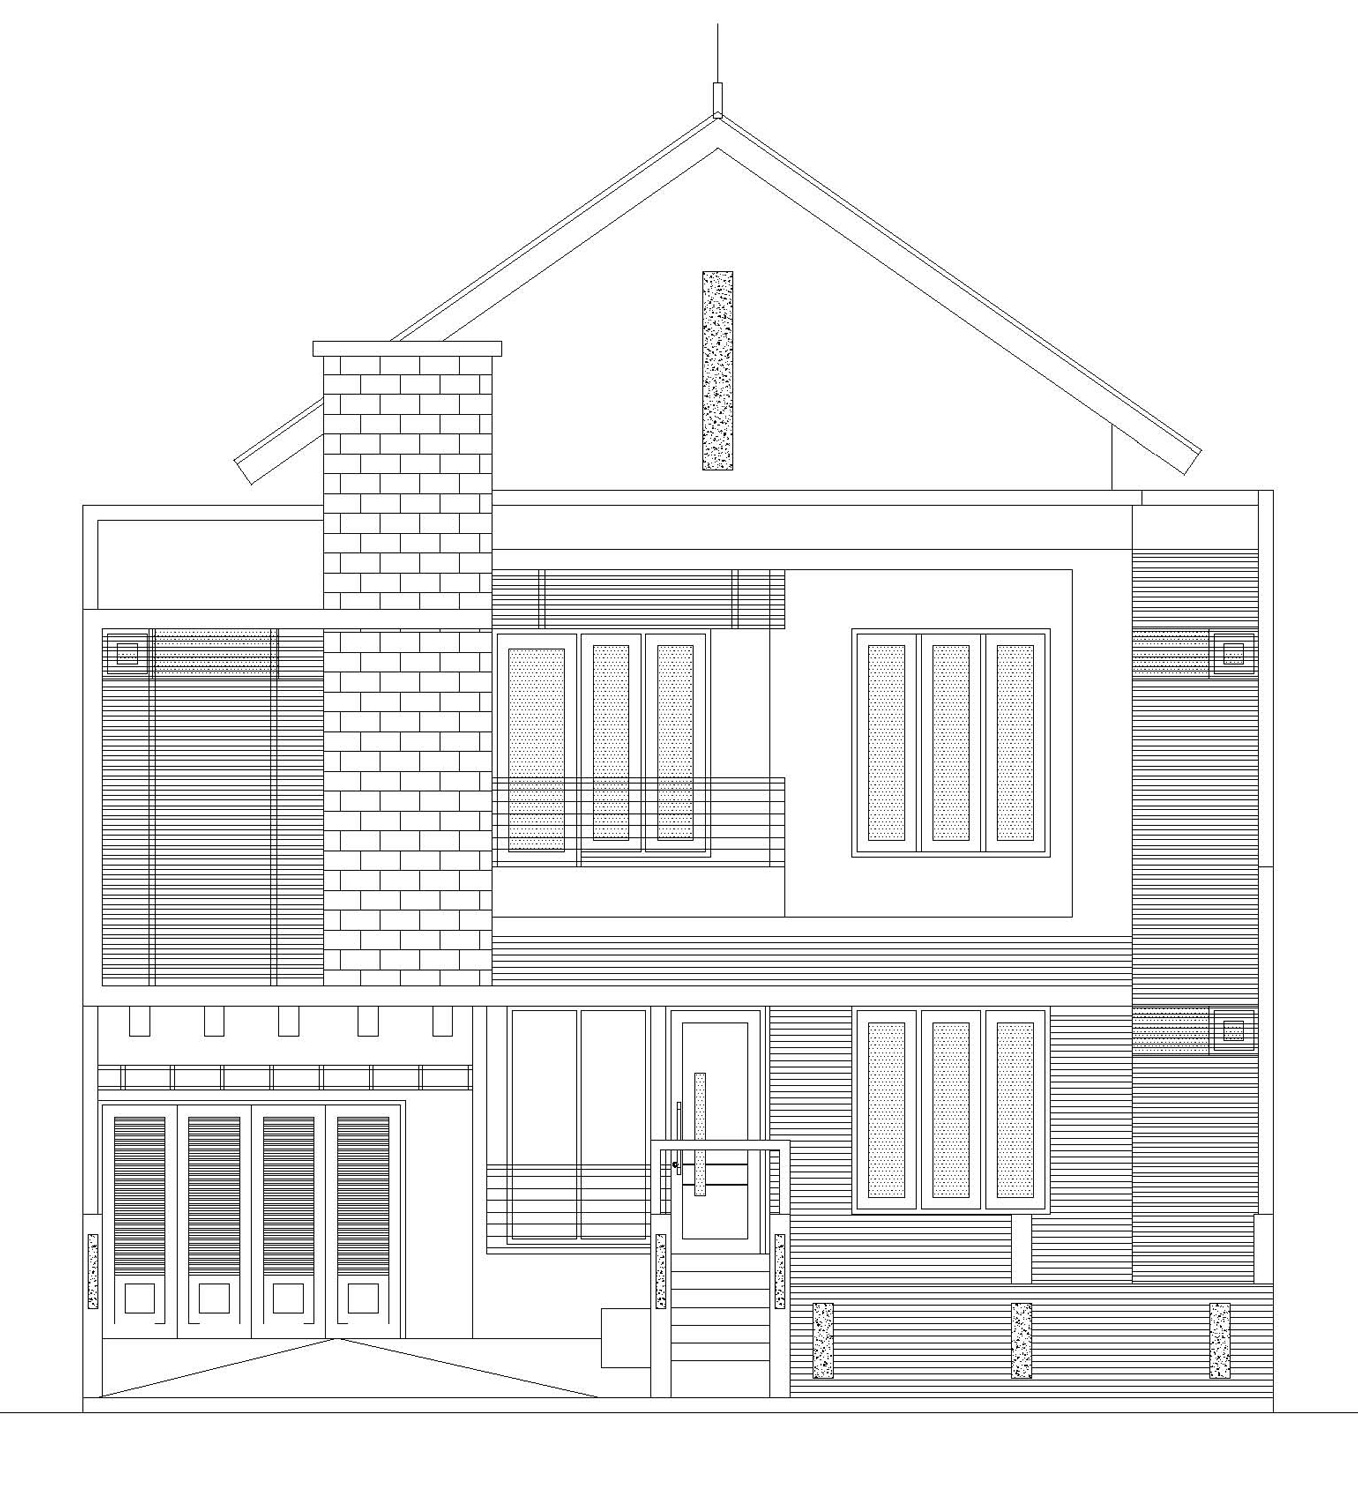 Model Rumah Minimalis 2 Lantai Di Cluster Perumahan BSD City